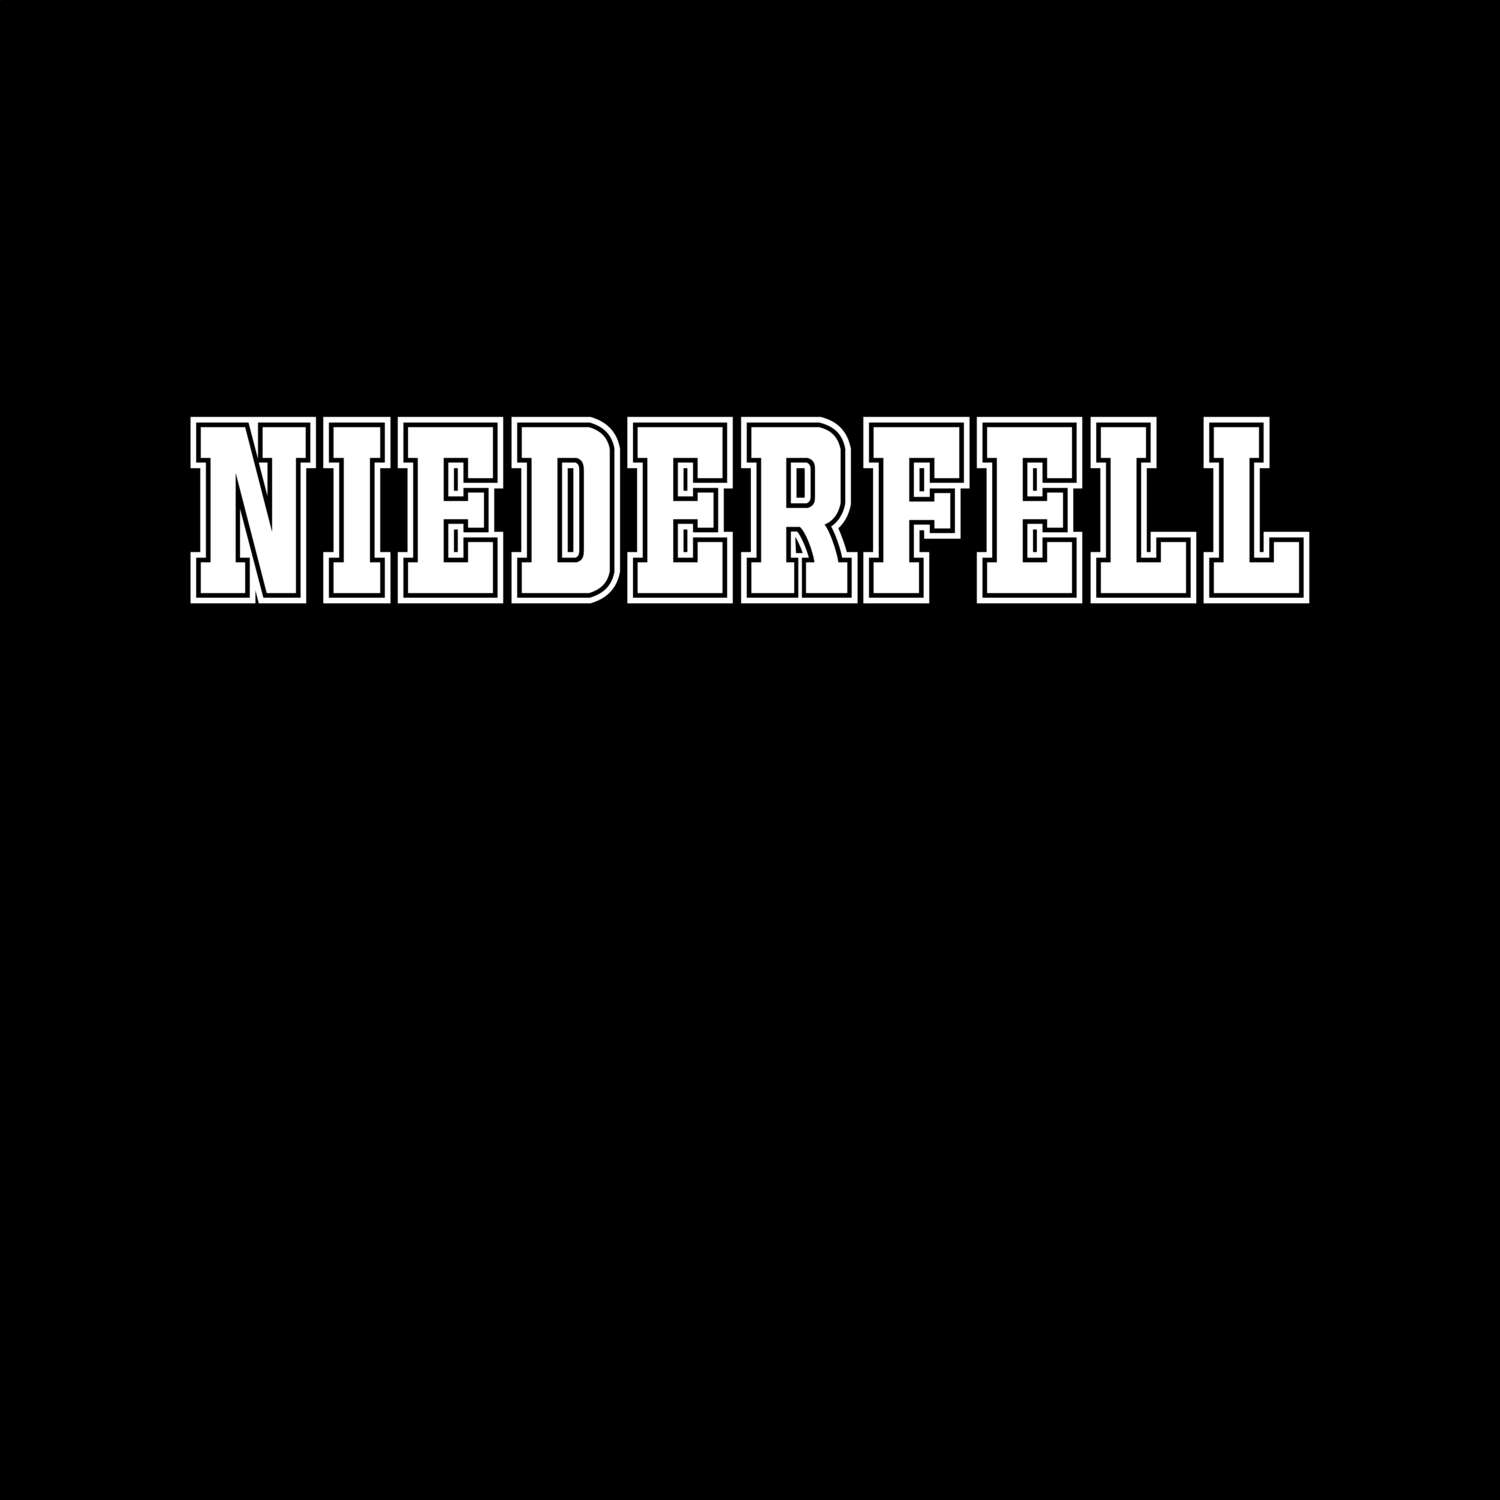 Niederfell T-Shirt »Classic«